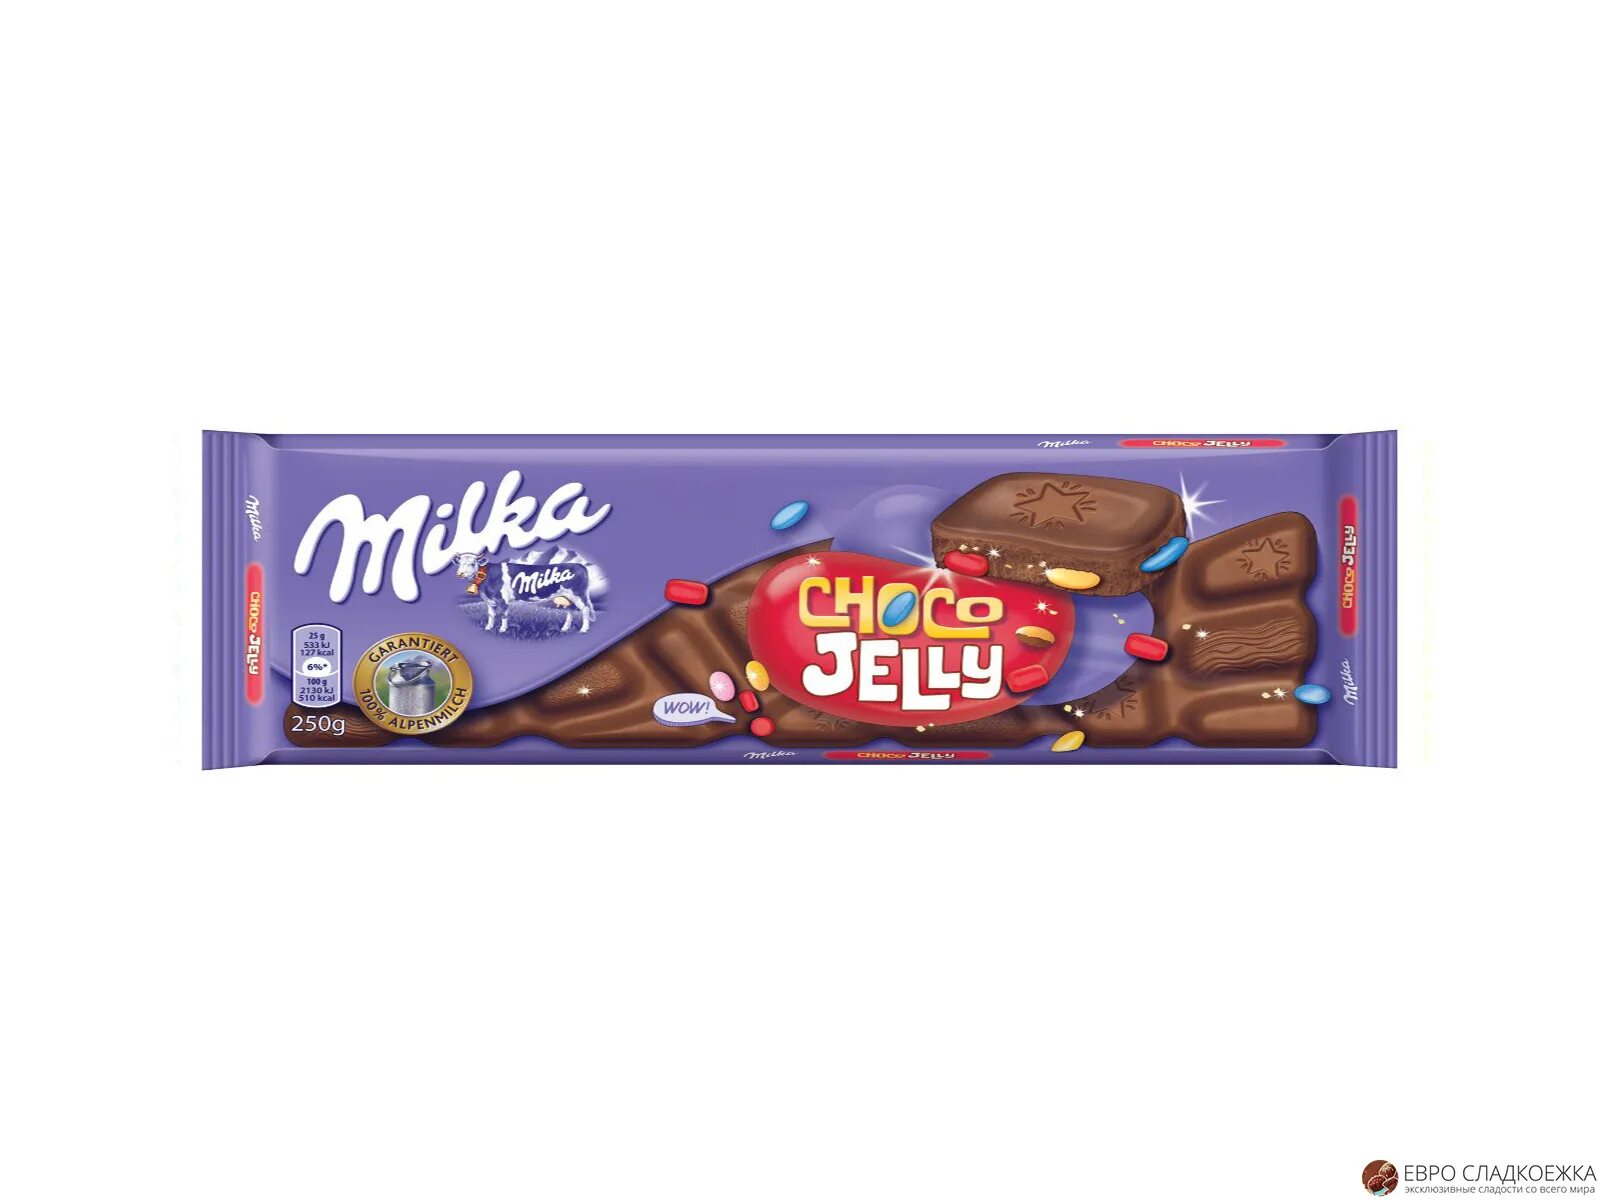 Choco jelly. Milka 250гр Чоко-Джелли. Милка Чоко Джелли 250 гр. Milka Choco Jelly. Шоколад Милка Макс Чоко Джелли 250г.